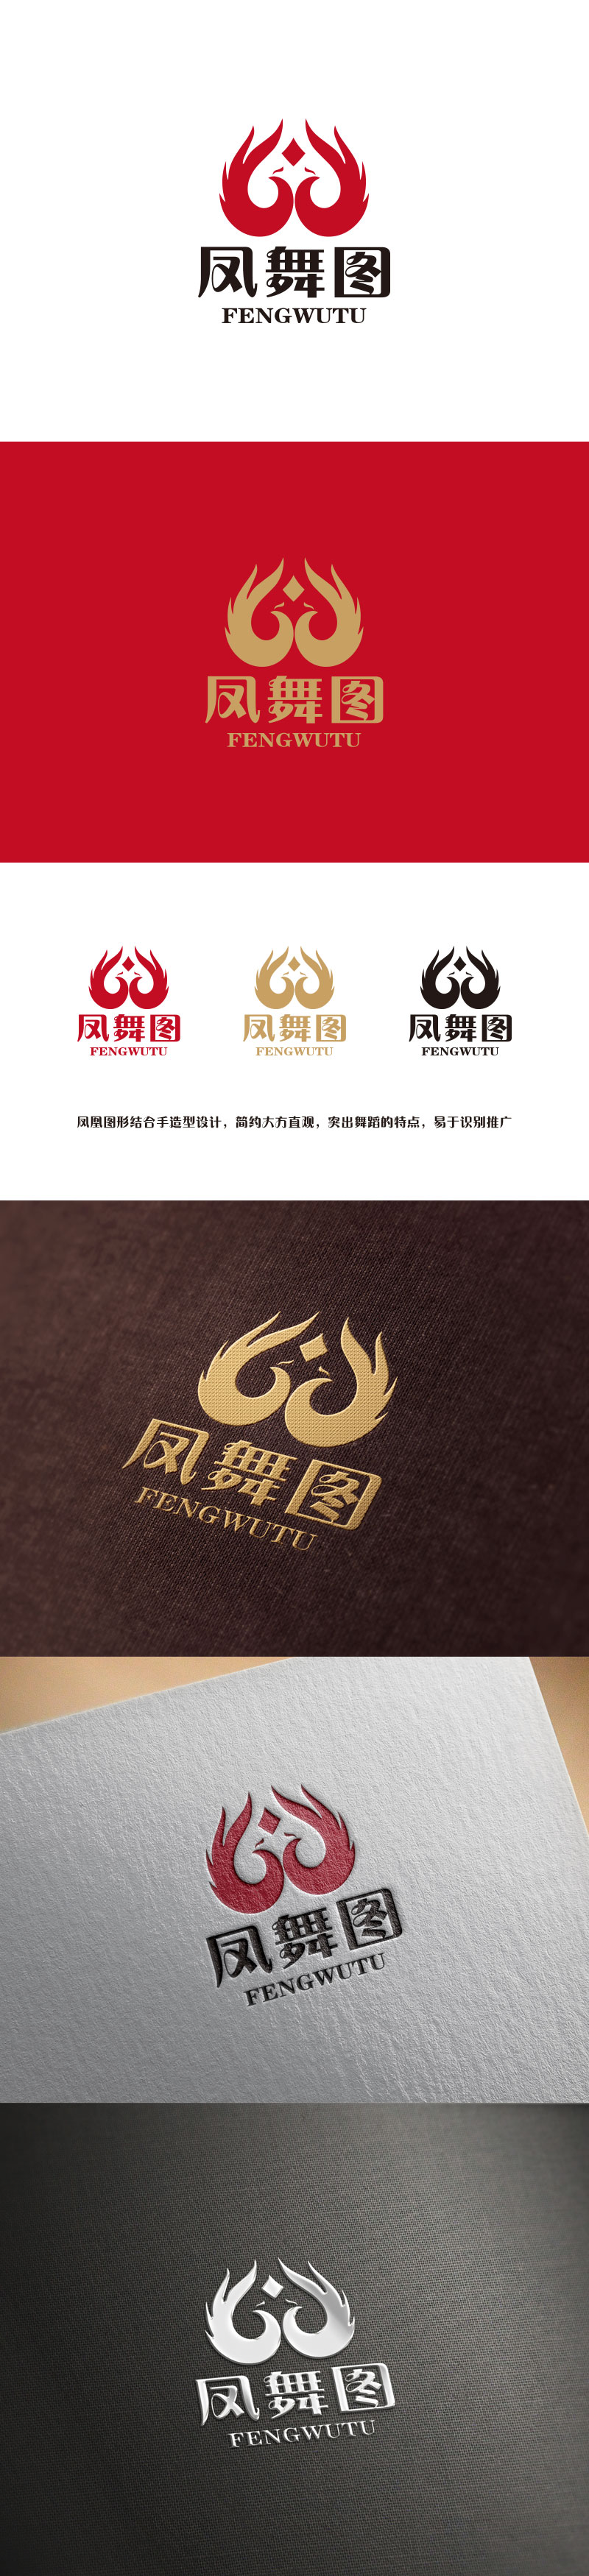 孙金泽的深圳市凤舞图舞蹈文化艺术培训有限公司logo设计